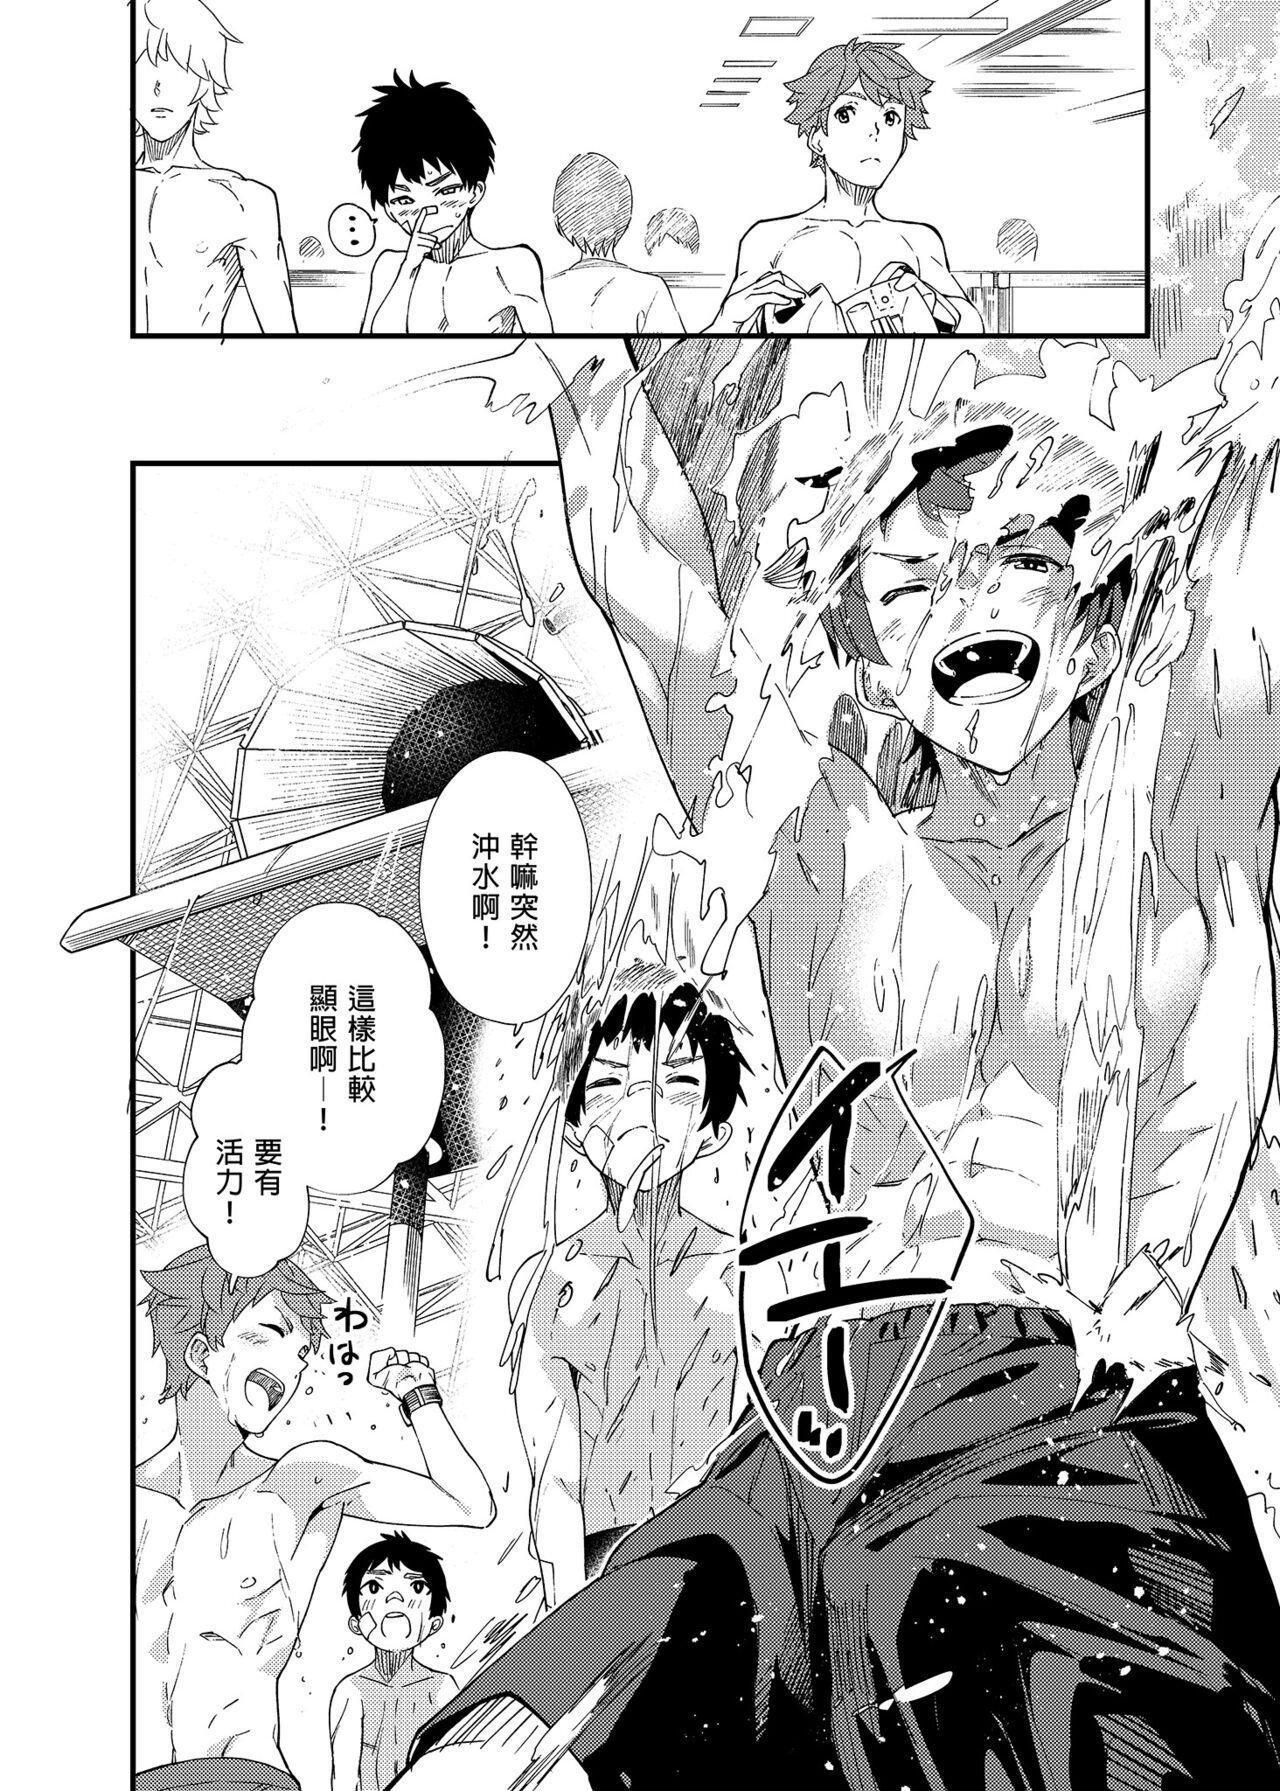 Self Na no ka tattara | 過了7天後 - Original Hymen - Page 11